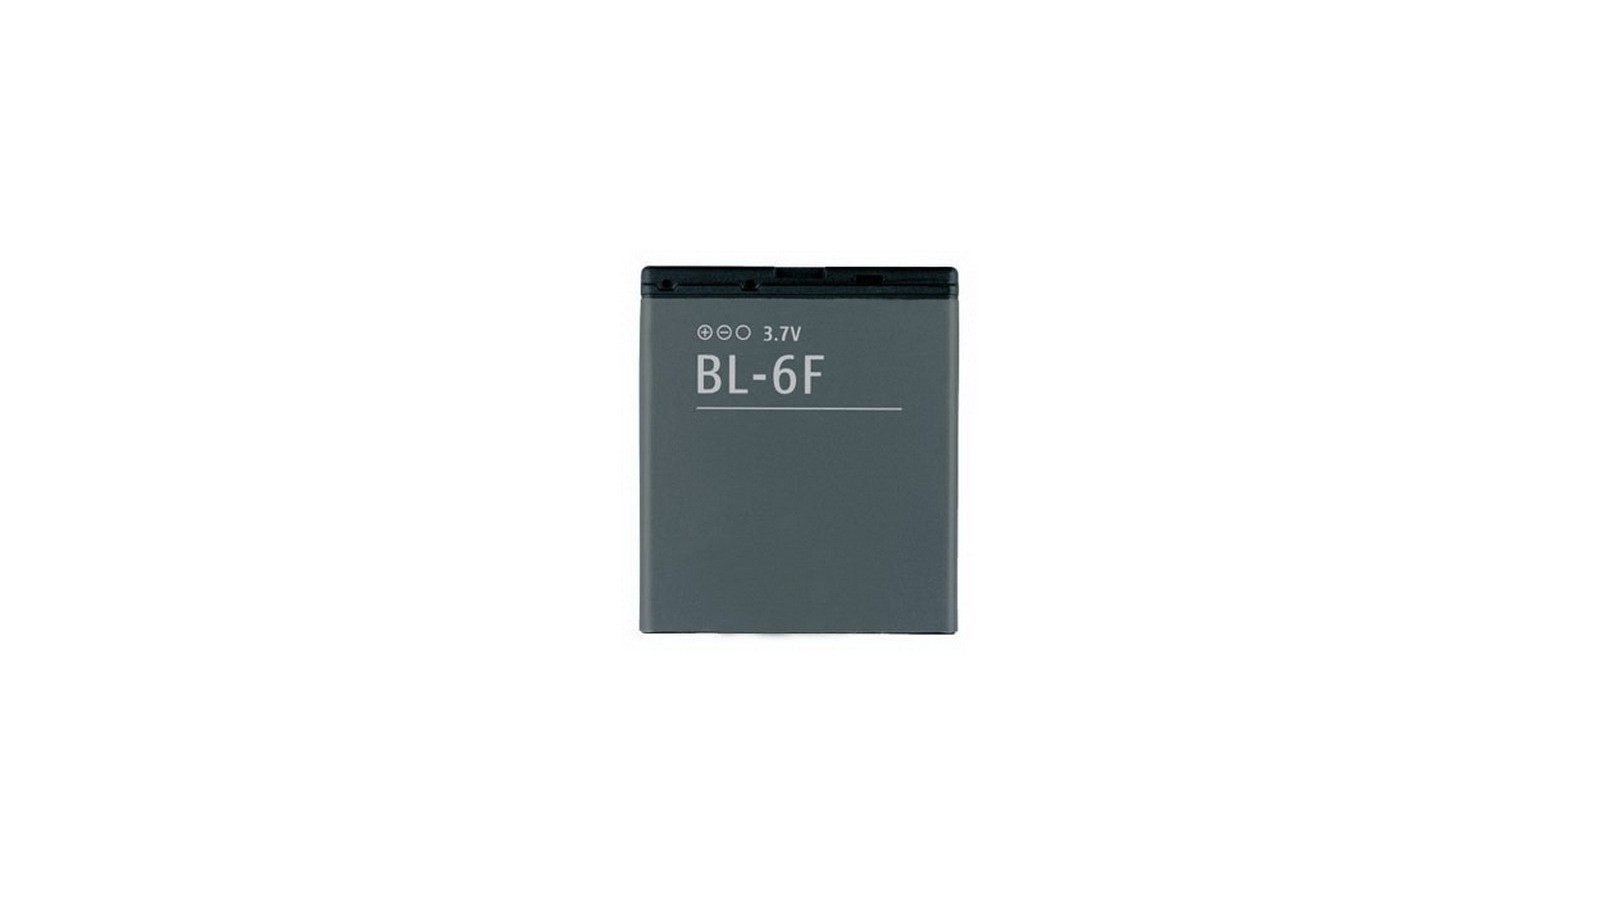 Batteria per Nokia BL-6F N95 8GB N78 N79 Li-ion